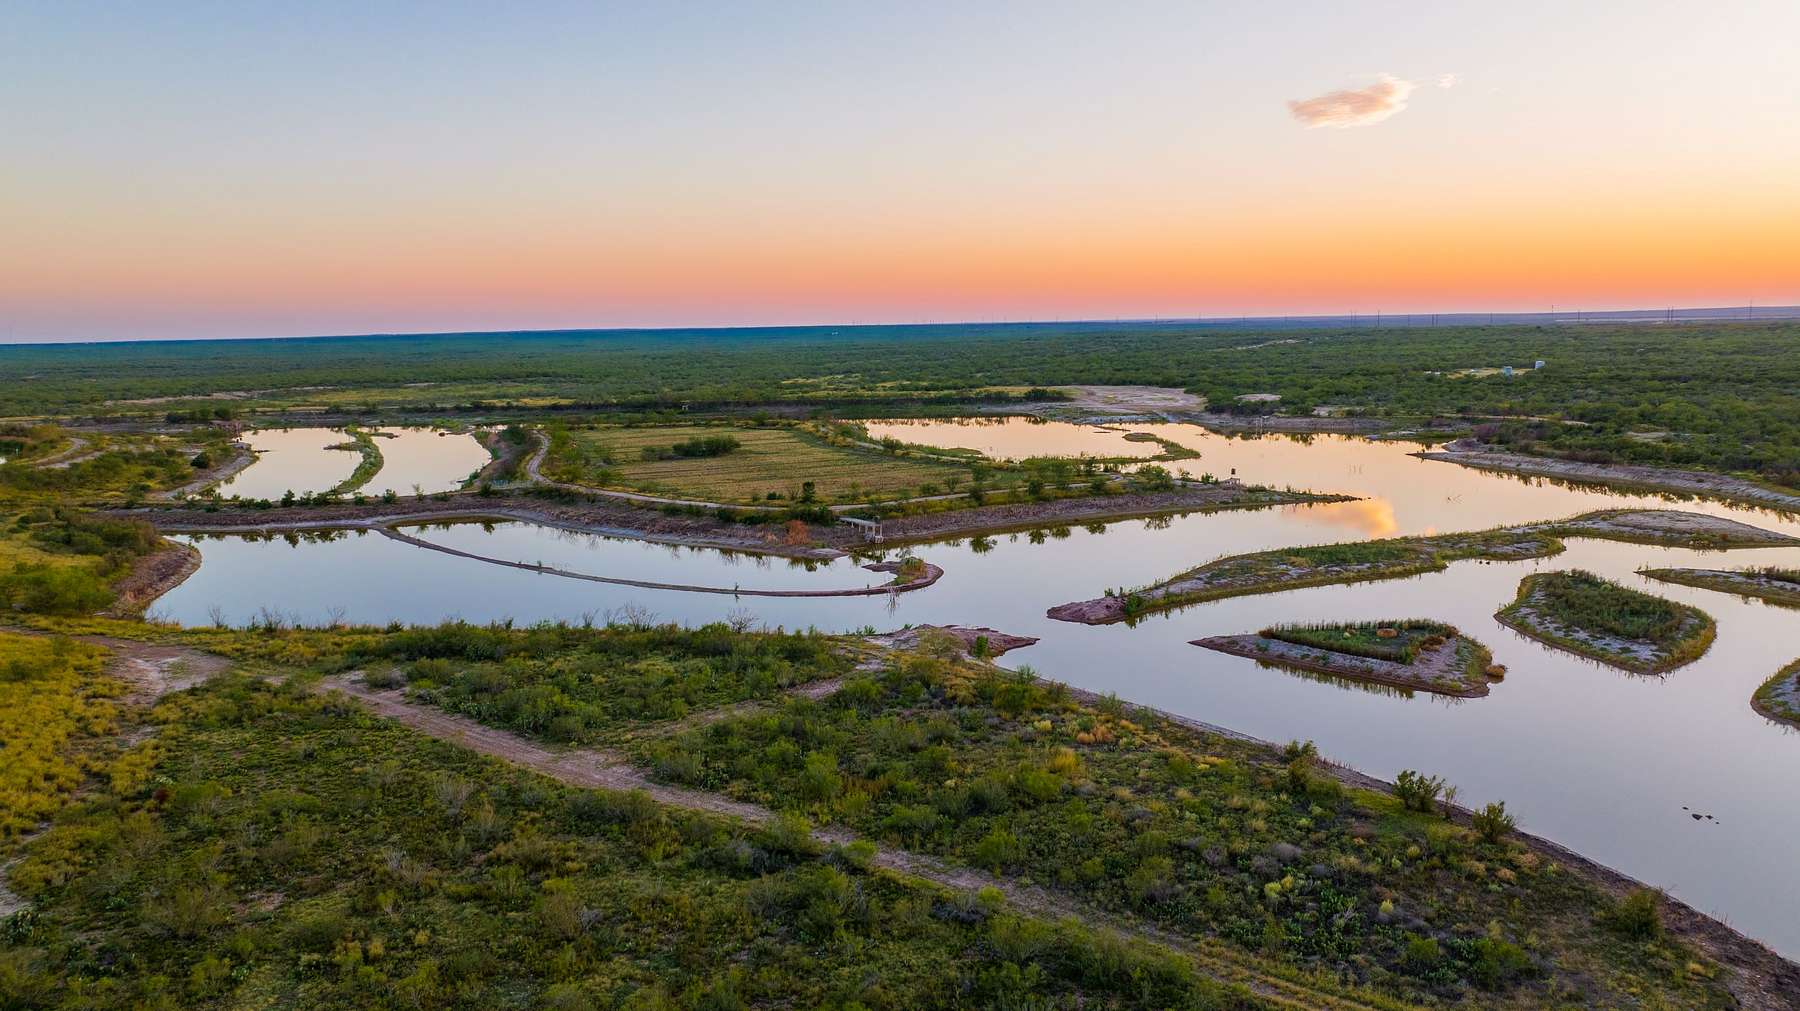 802 Acres of Recreational Land & Farm for Sale in San Ygnacio, Texas